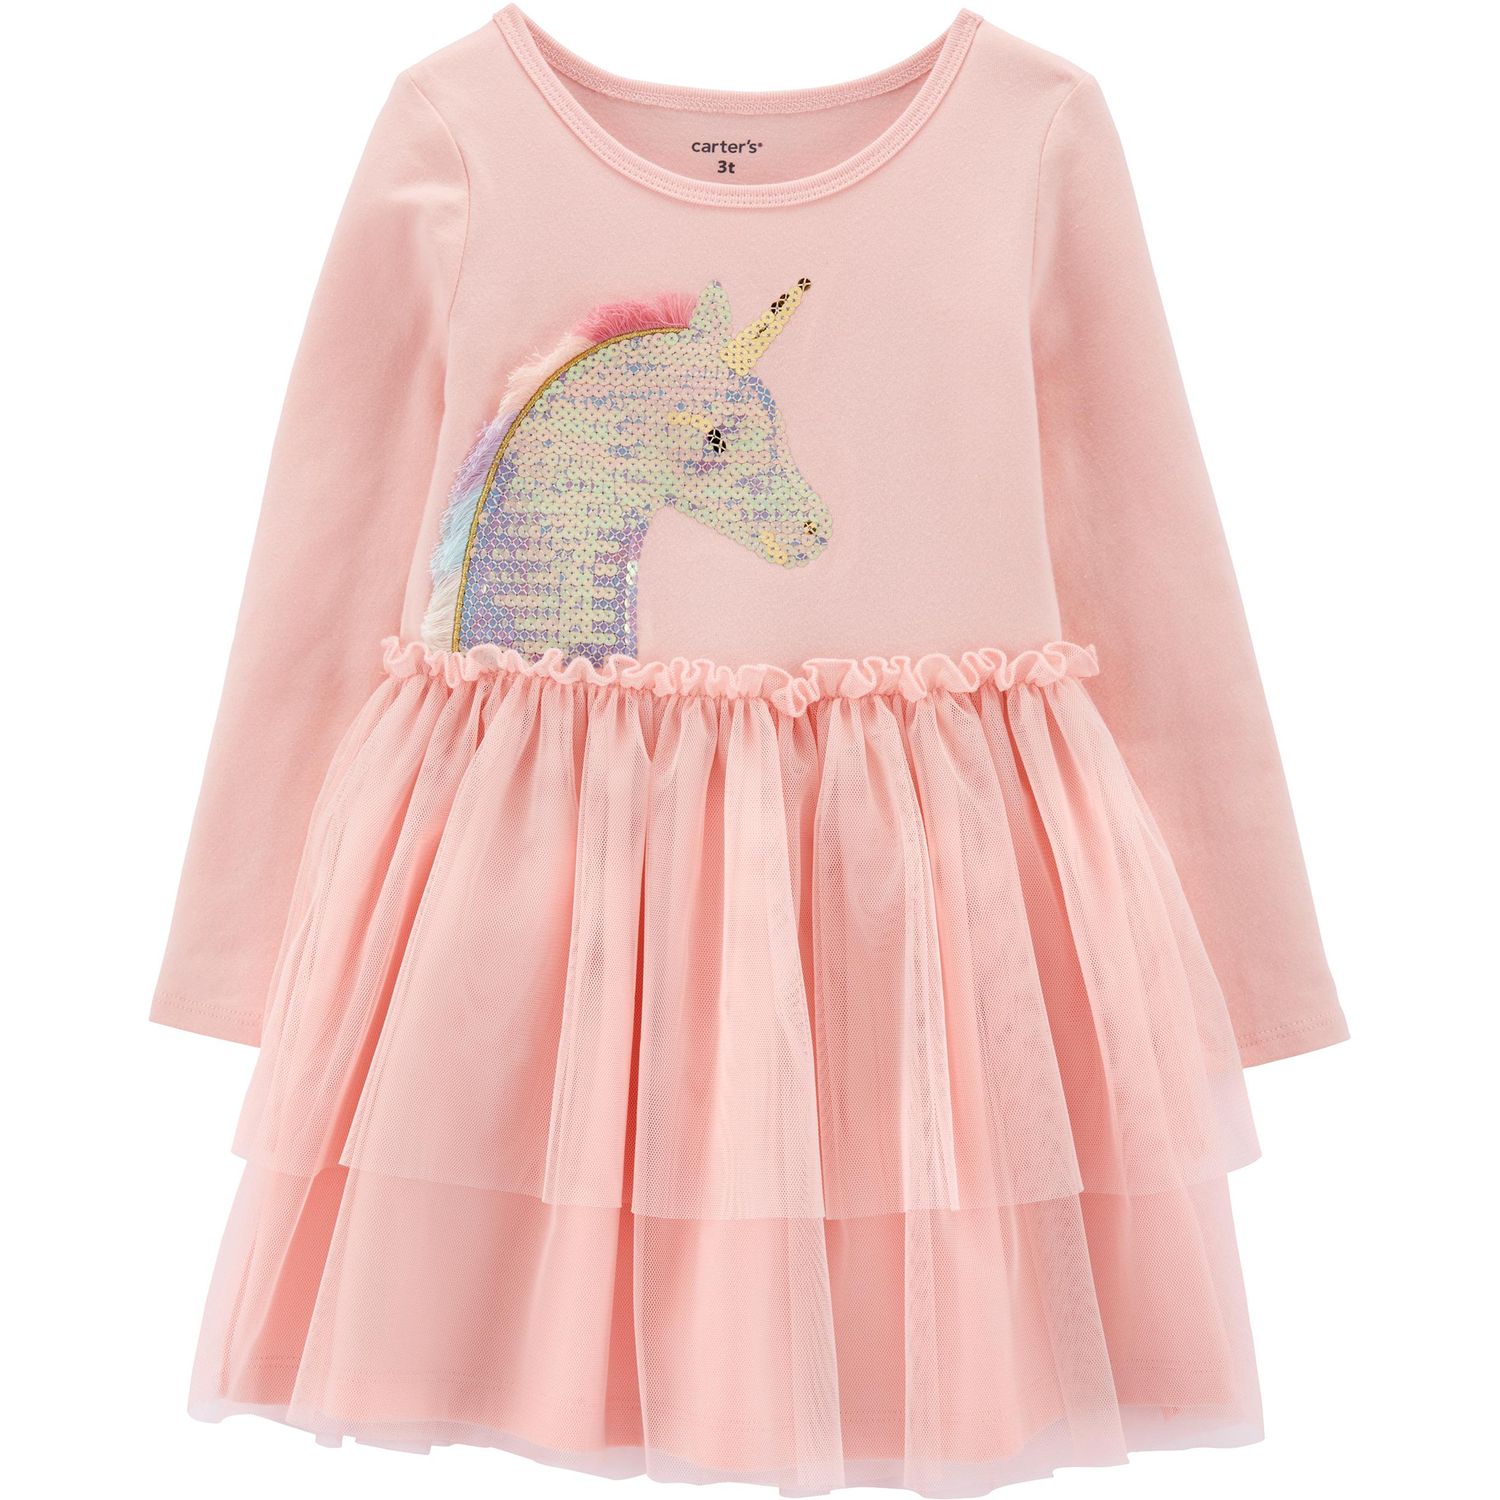 pink unicorn tutu dress